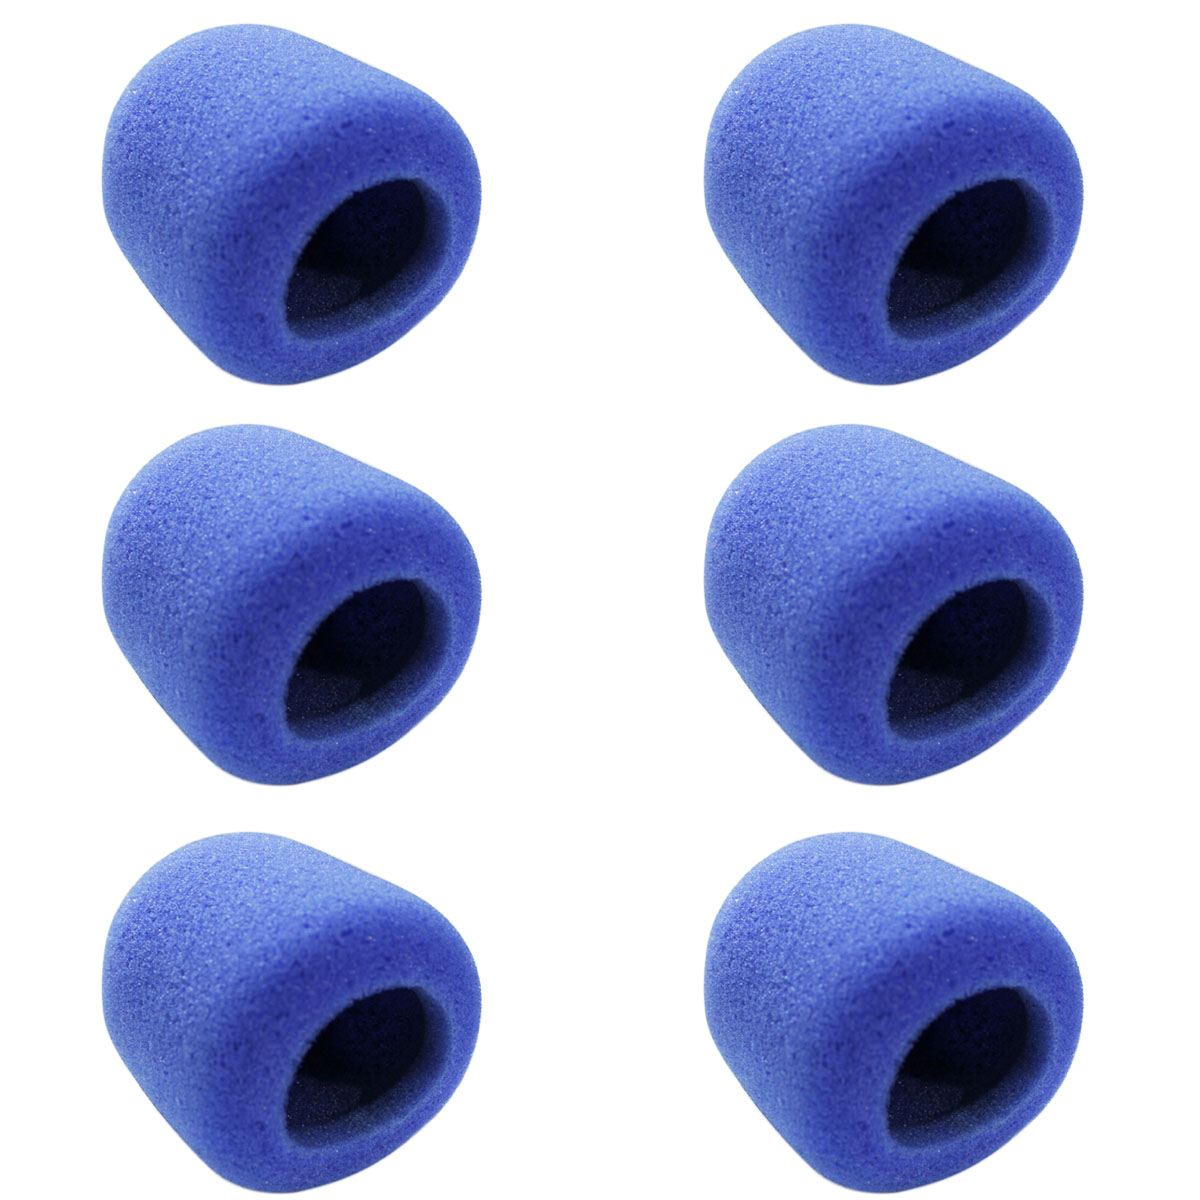 6 Espumas Azul para microfone de mão CSR GM515